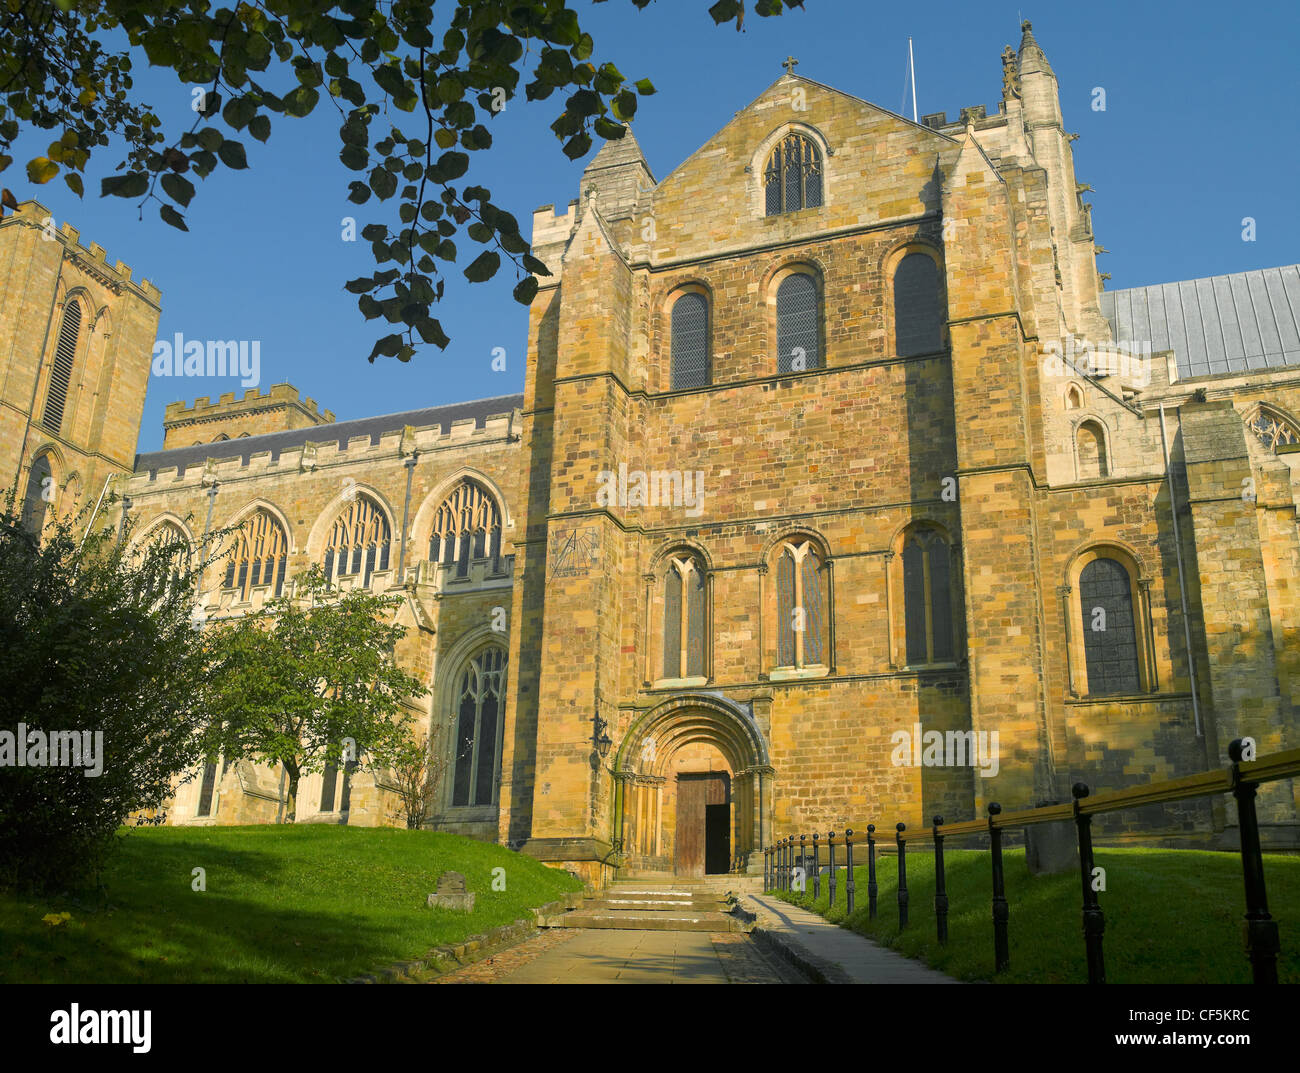 Le transept sud entrée de la cathédrale de Ripon, un des plus anciens sites d'adoration Chrétienne en Grande-Bretagne. Banque D'Images